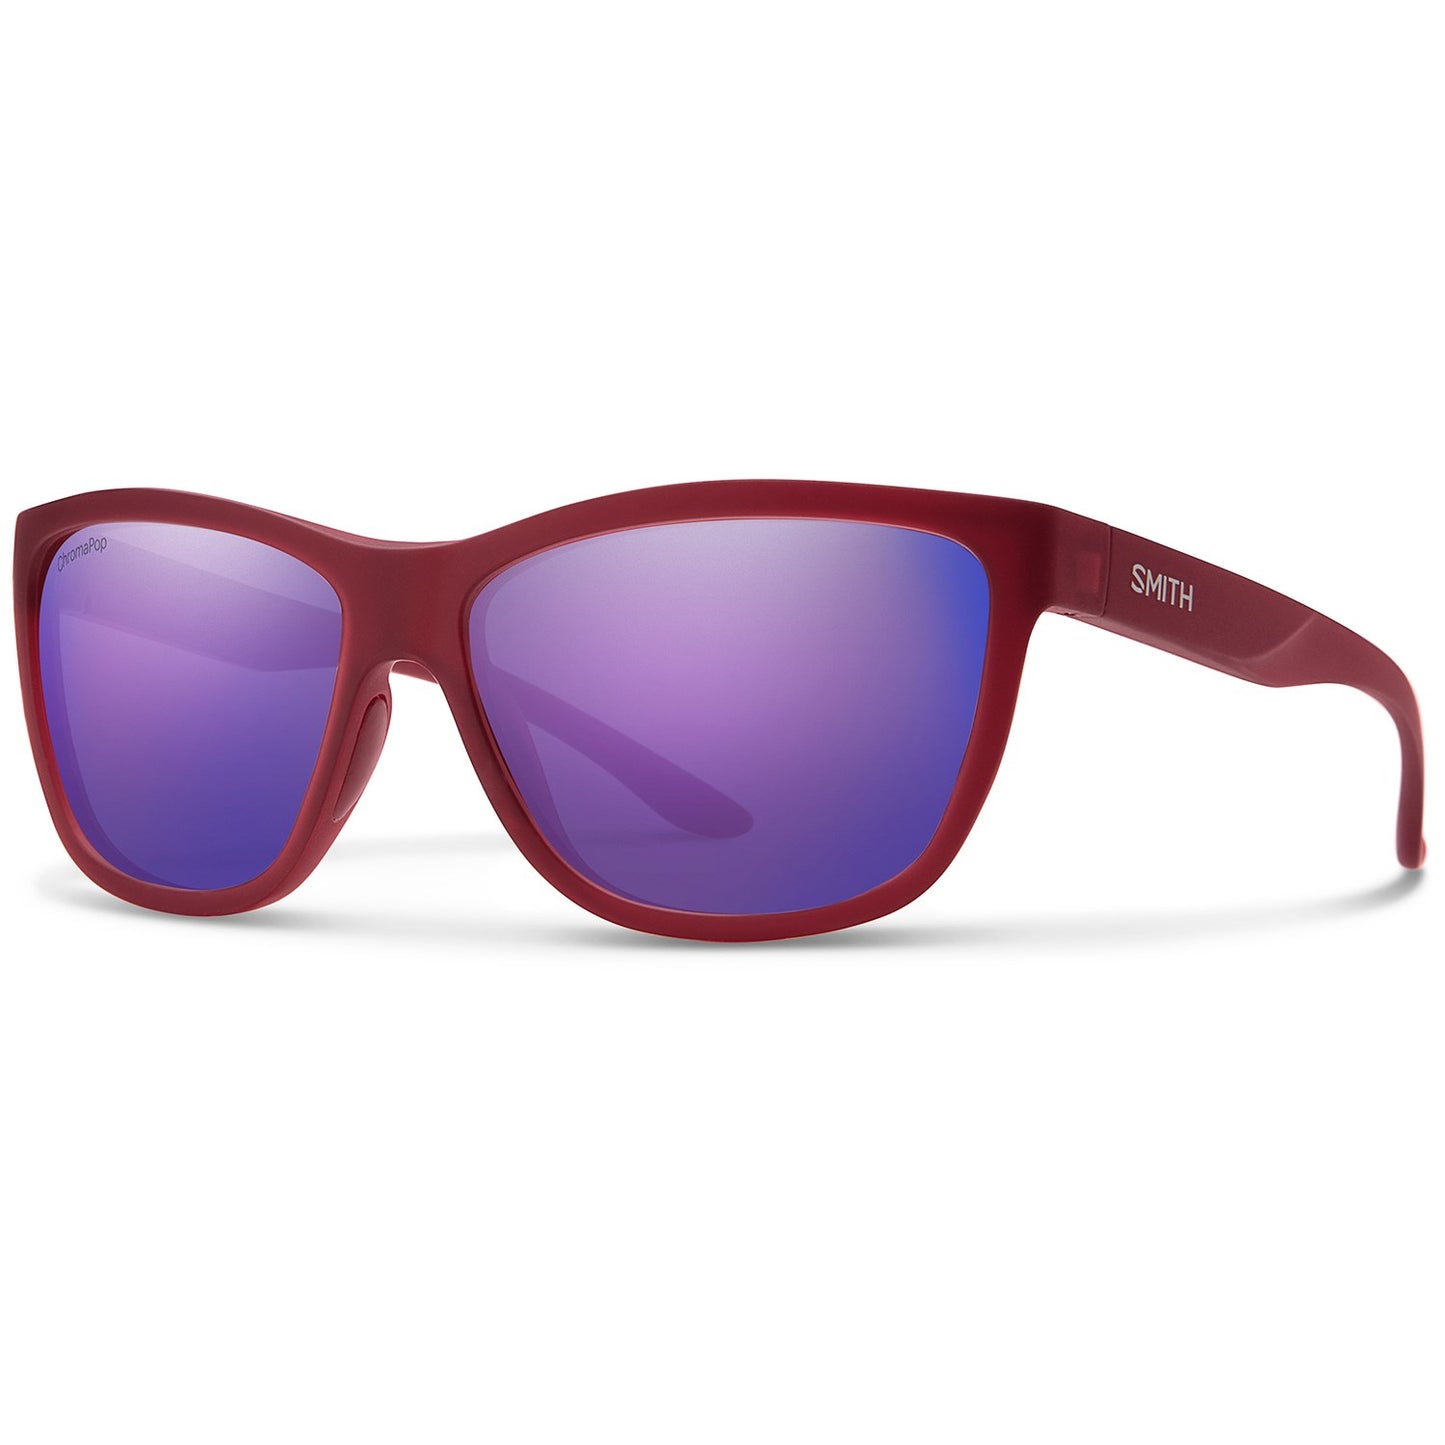 Smith Eclipse Sunglasses - Women's